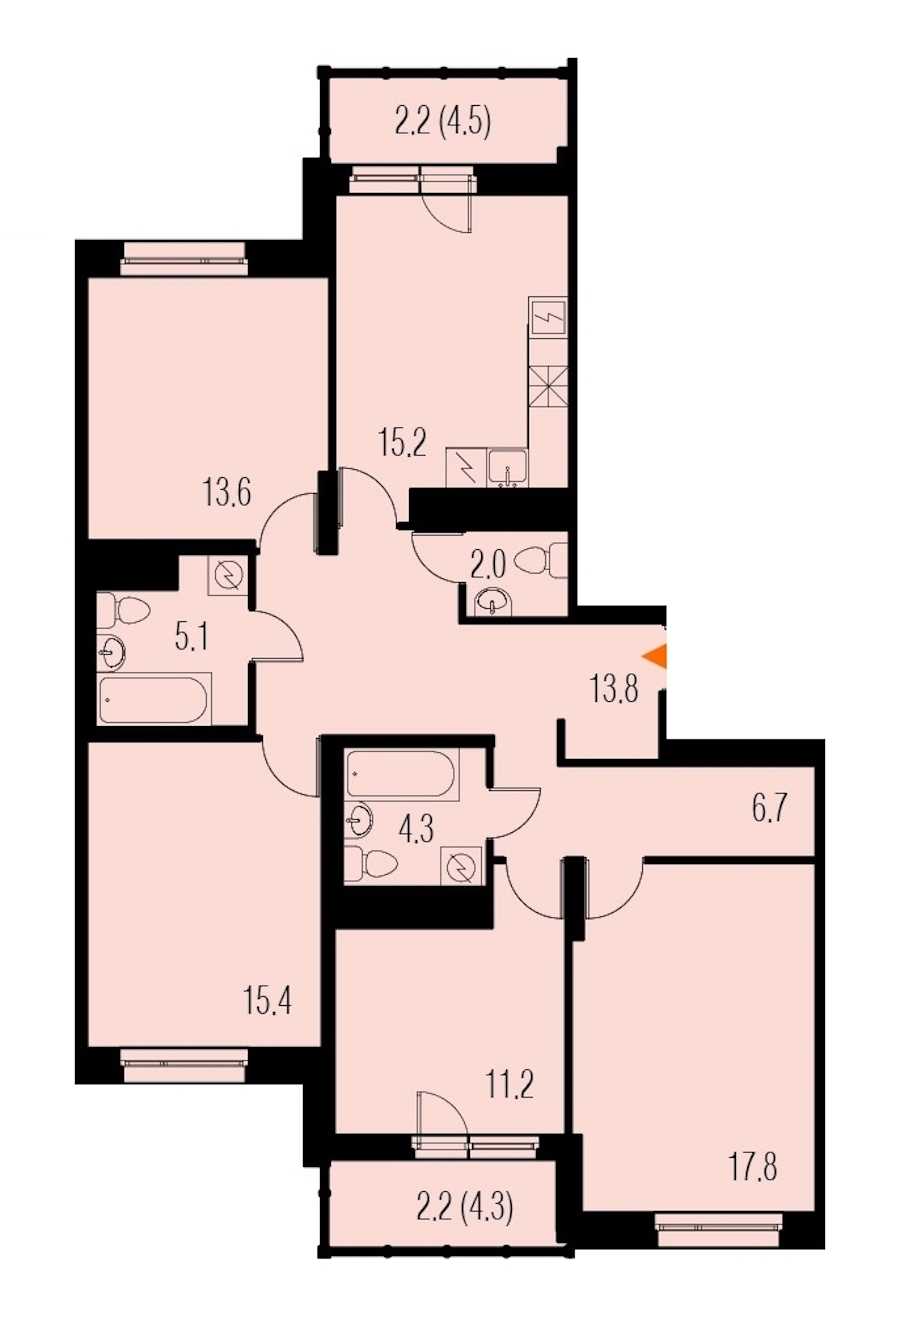 Четырехкомнатная квартира в : площадь 111.1 м2 , этаж: 22 – купить в Санкт-Петербурге